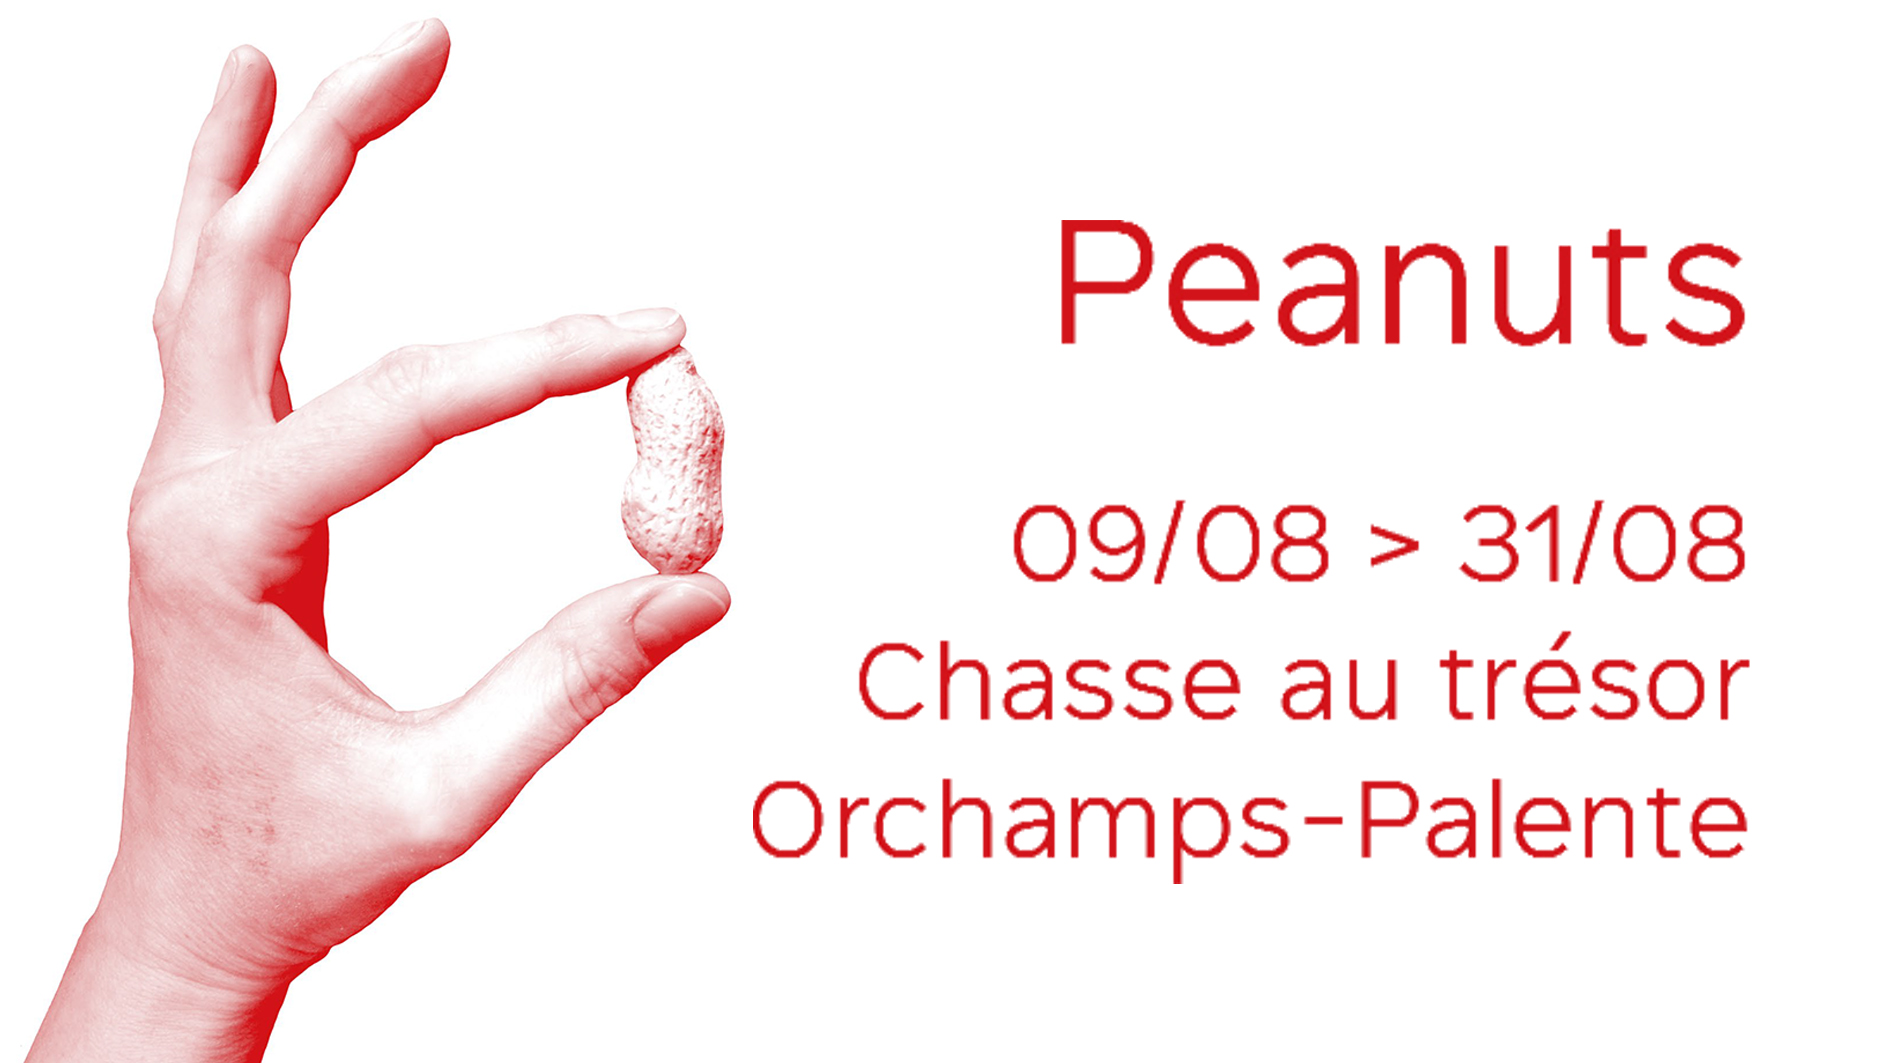 Du 9 au 31/08 – « Peanuts », une chasse au trésor dans le quartier Palente-Les Orchamps